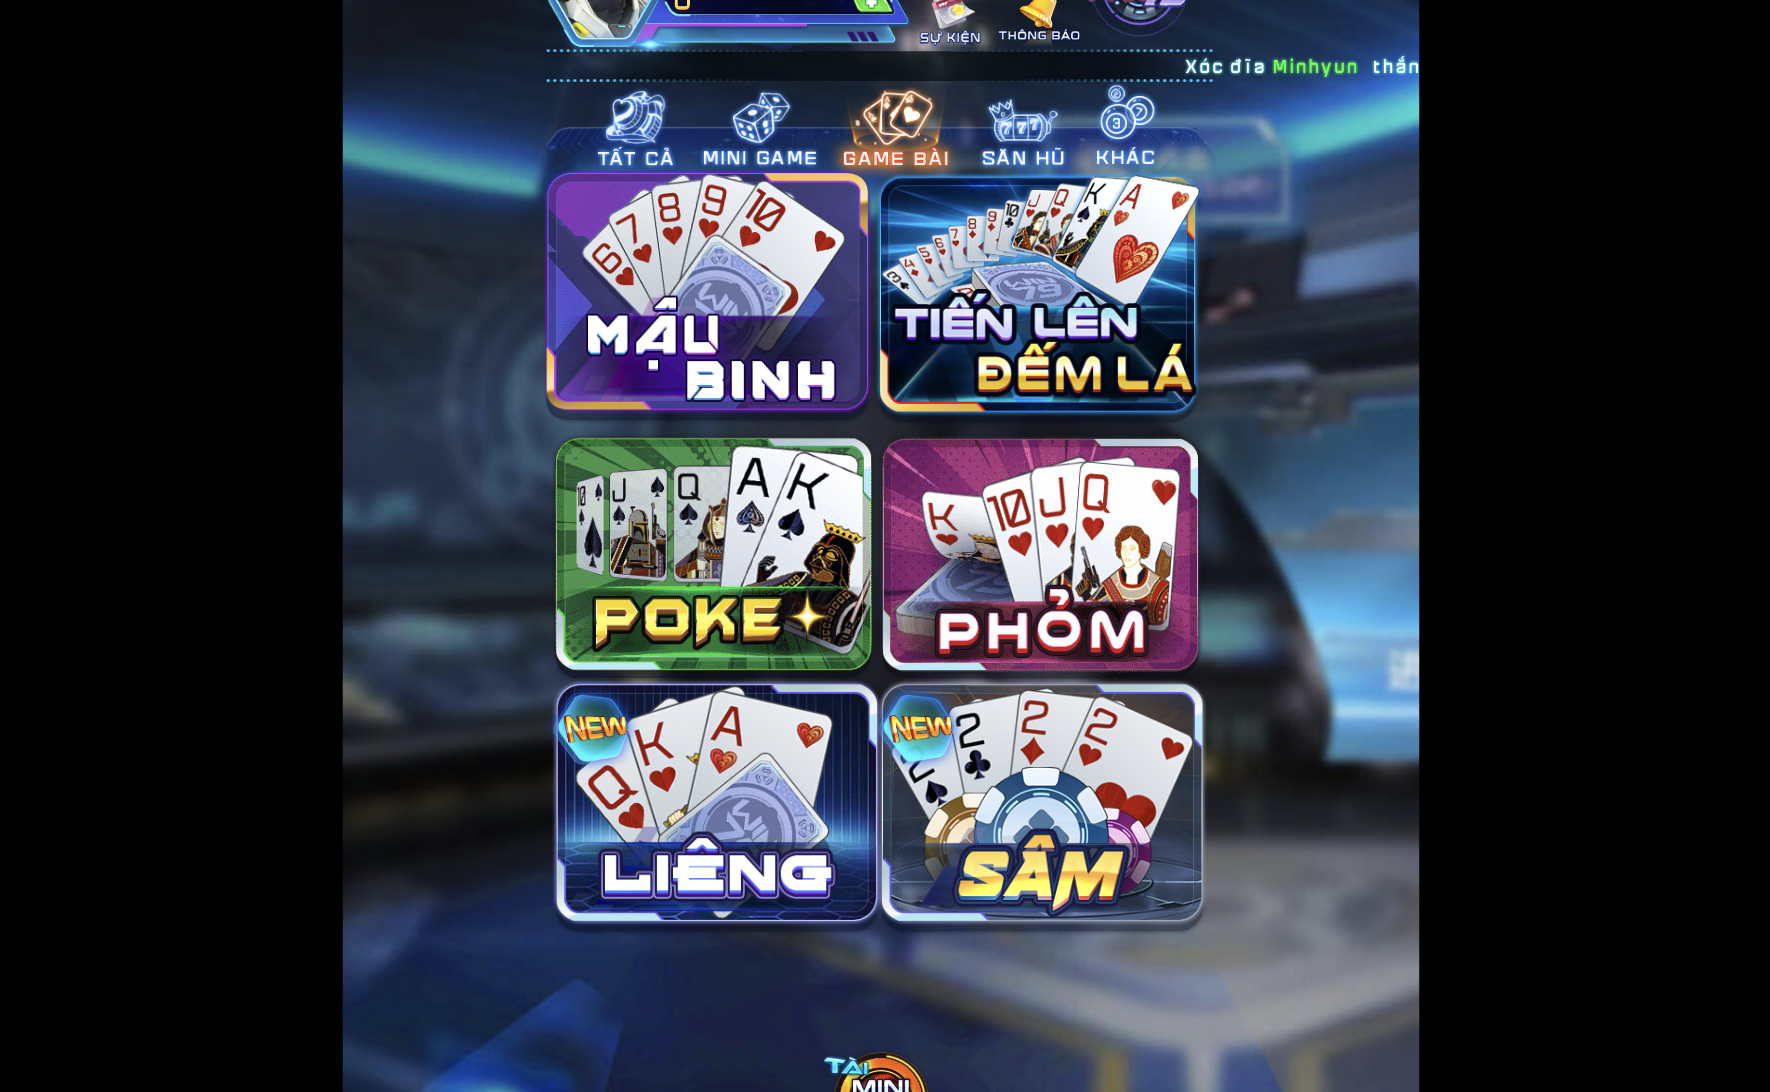 Game bài Liêng là một trong những trò chơi phổ biến nhất tại cổng game Win79